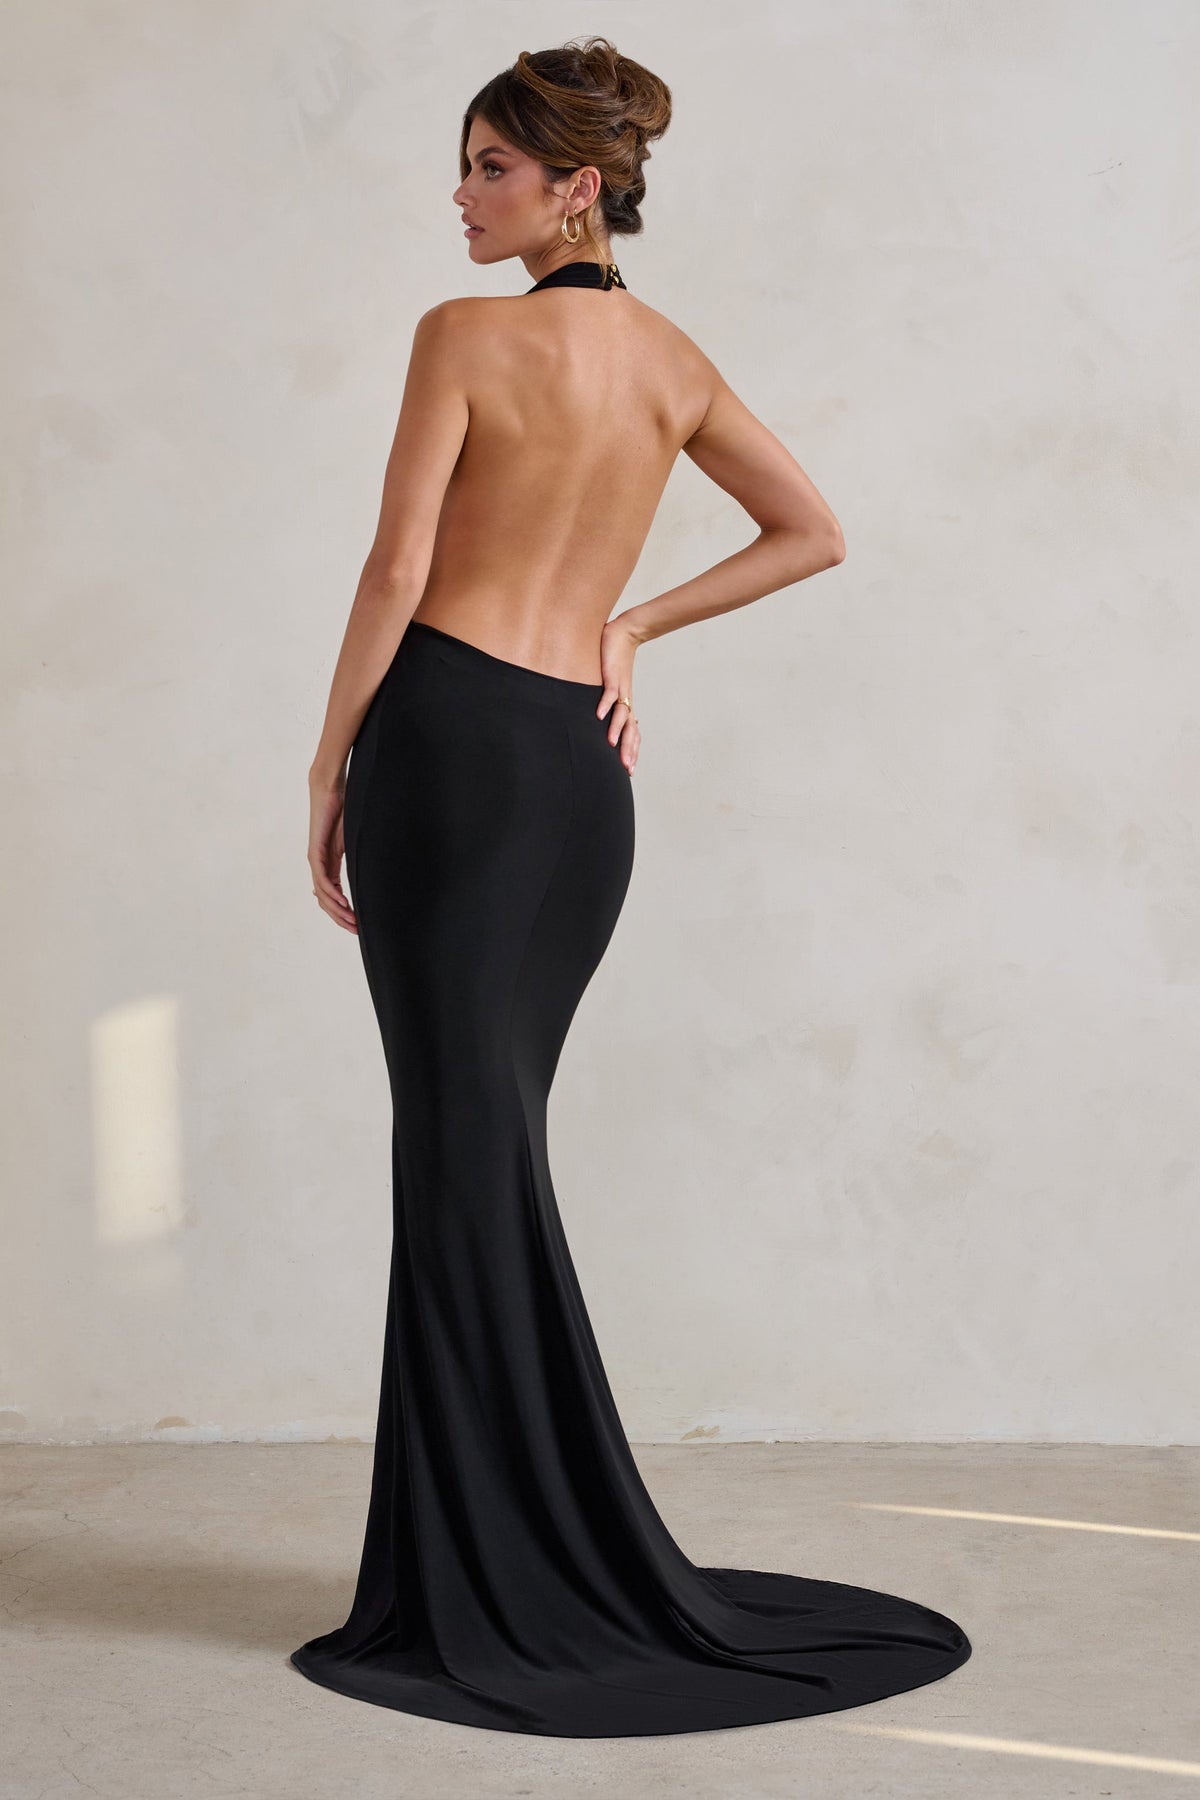 Women's Satin Low Back Bodycon Mini Dress – Hey Samy